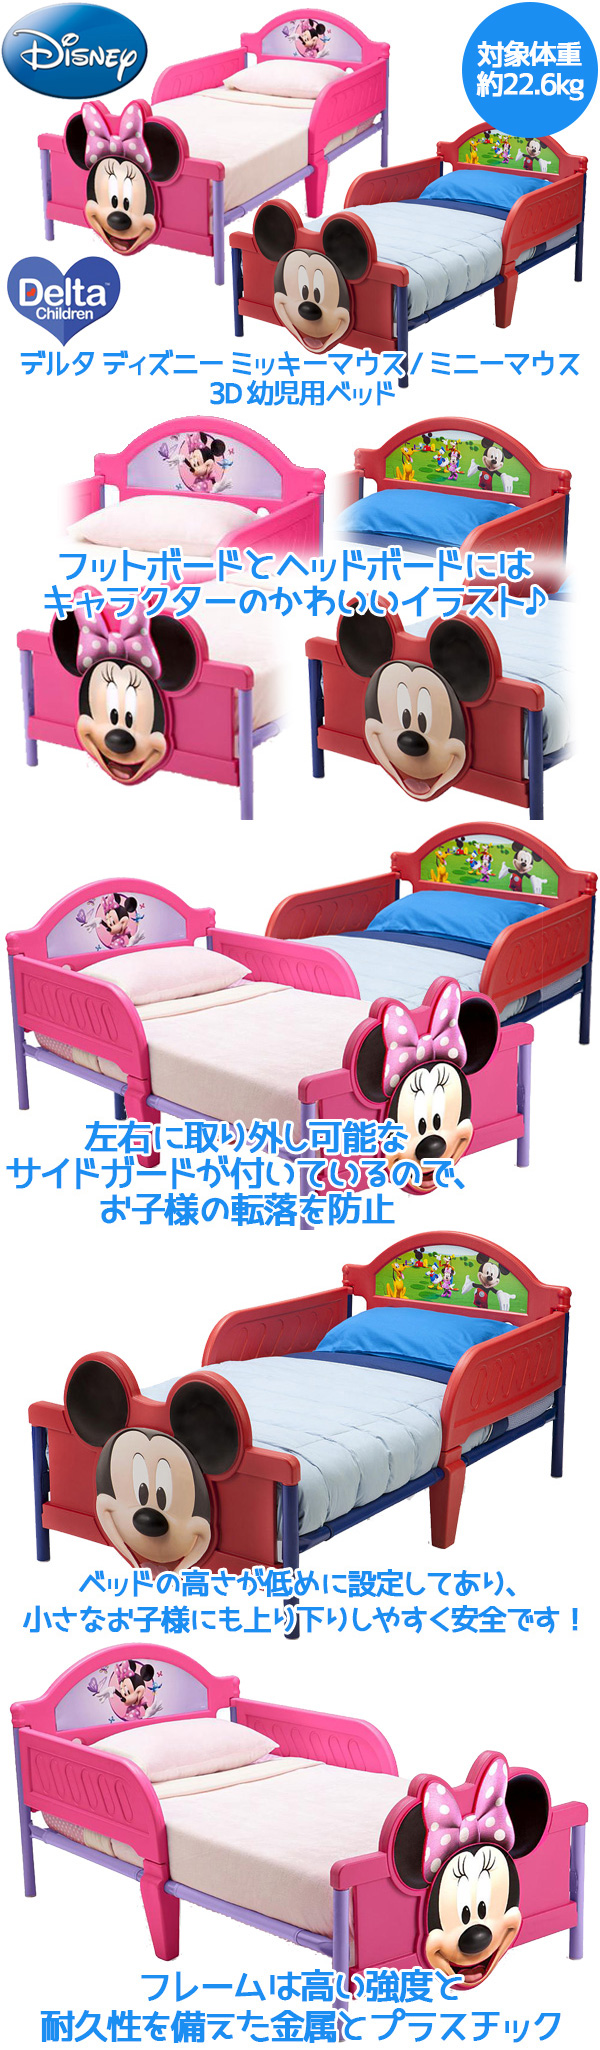 子供用ベッド デルタ ディズニー ミッキーマウス / ミニーマウス 3D 幼児用ベッド トドラーベッド